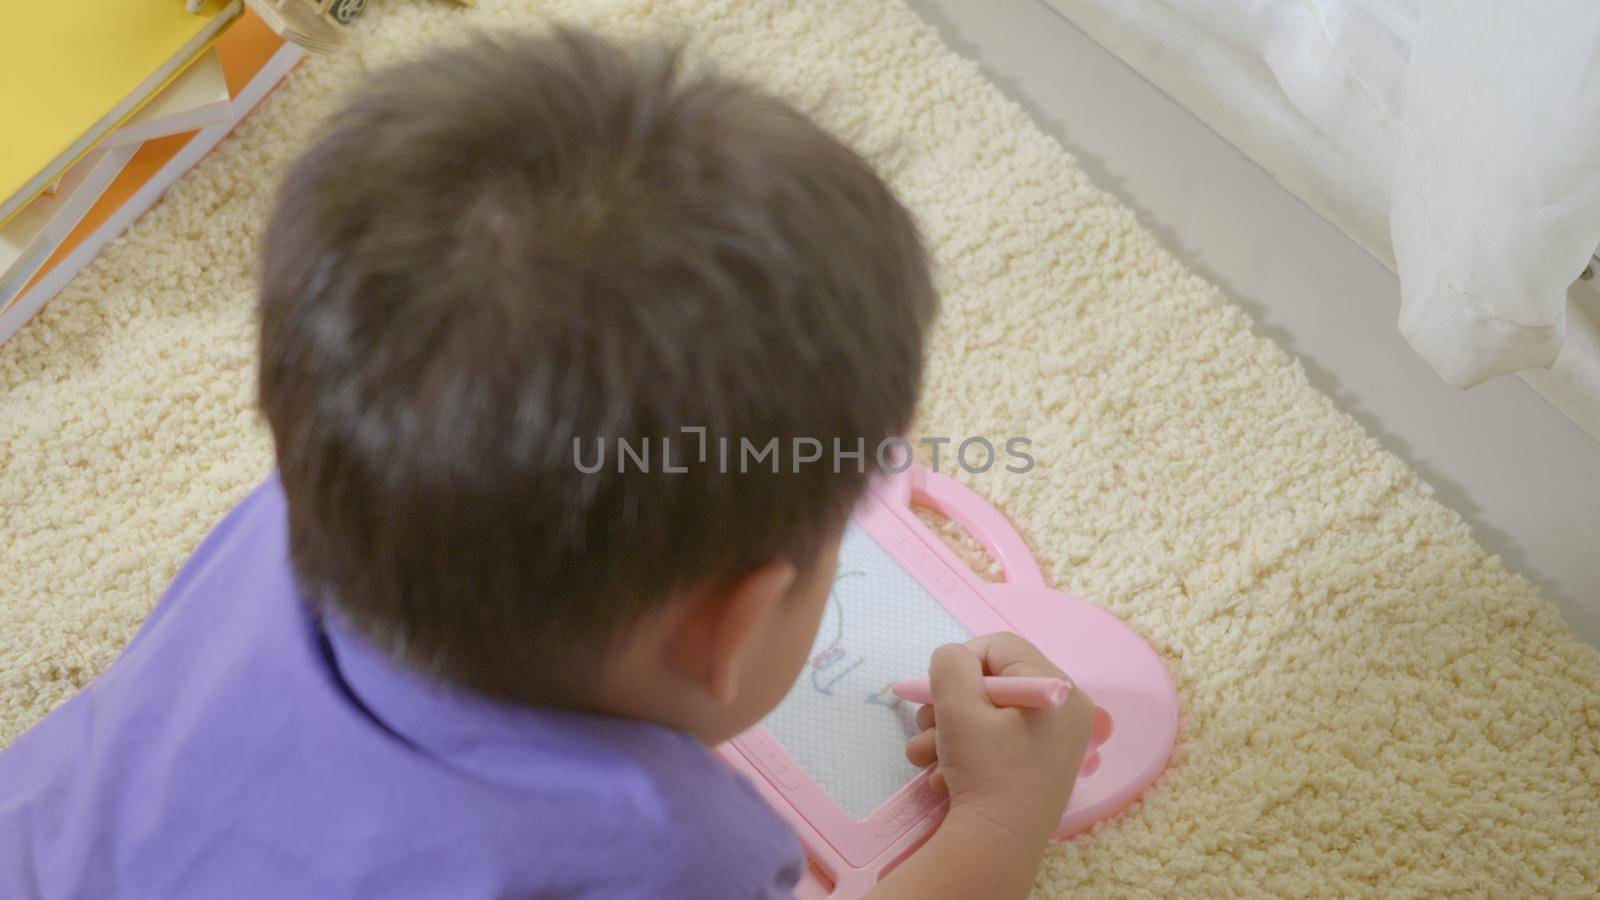 klid little boy preschool writing at the magnetic drawing board by Sorapop